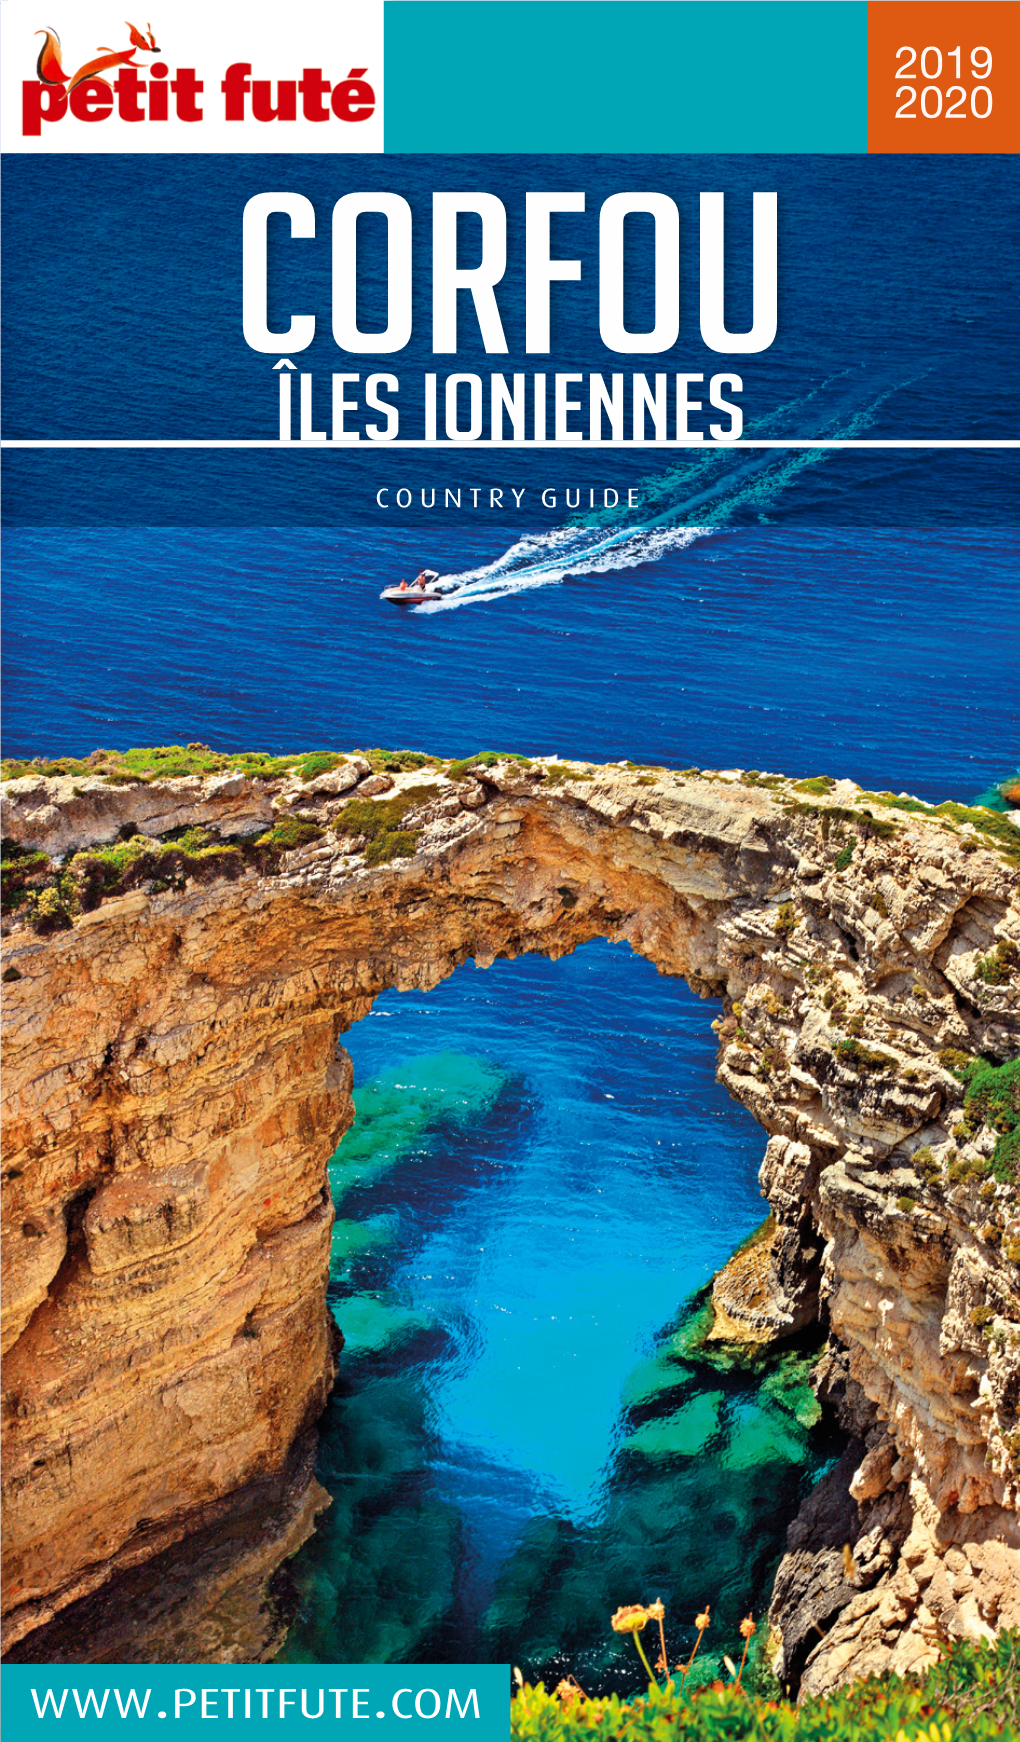 De Voyage 2019 - 2020 Sur Plus De 700 Destinations Corfou Îles Ioniennes Version Numérique Offerte Pour L’Achat COUNTRY GUIDE De Tout Guide Papier